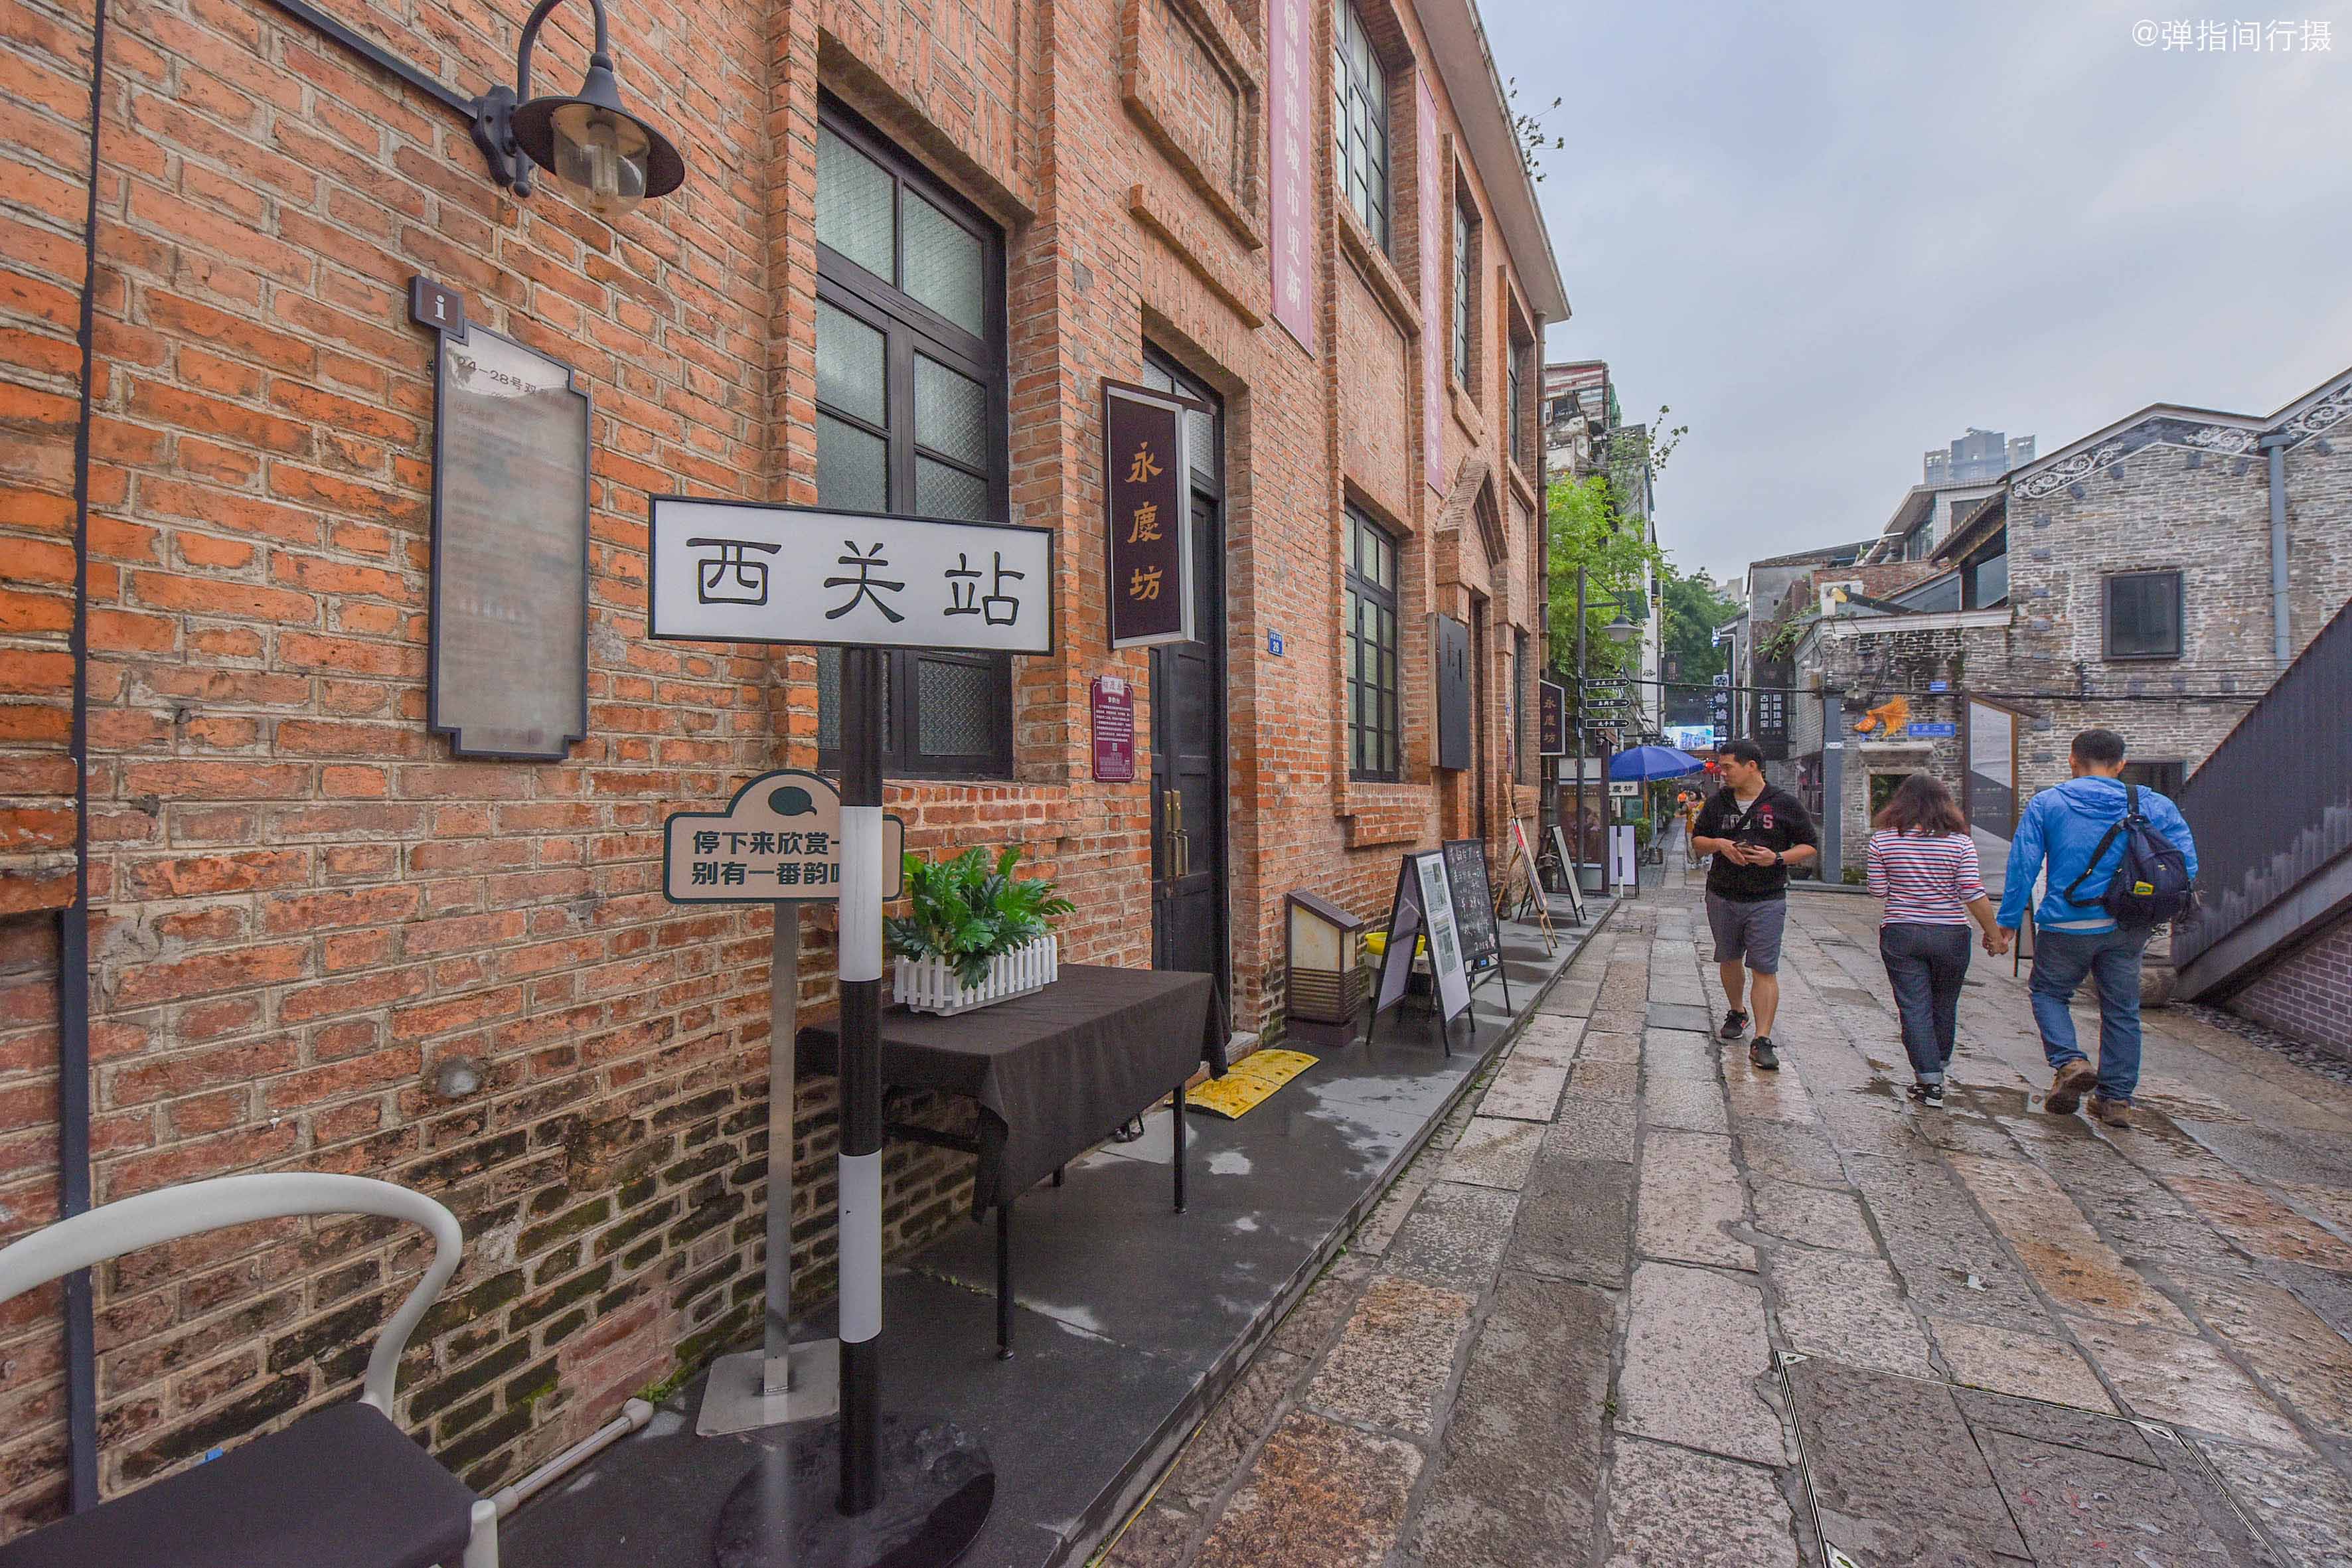 广州最美老街曾是破旧城中村今成传统与现代交织的热门打卡地